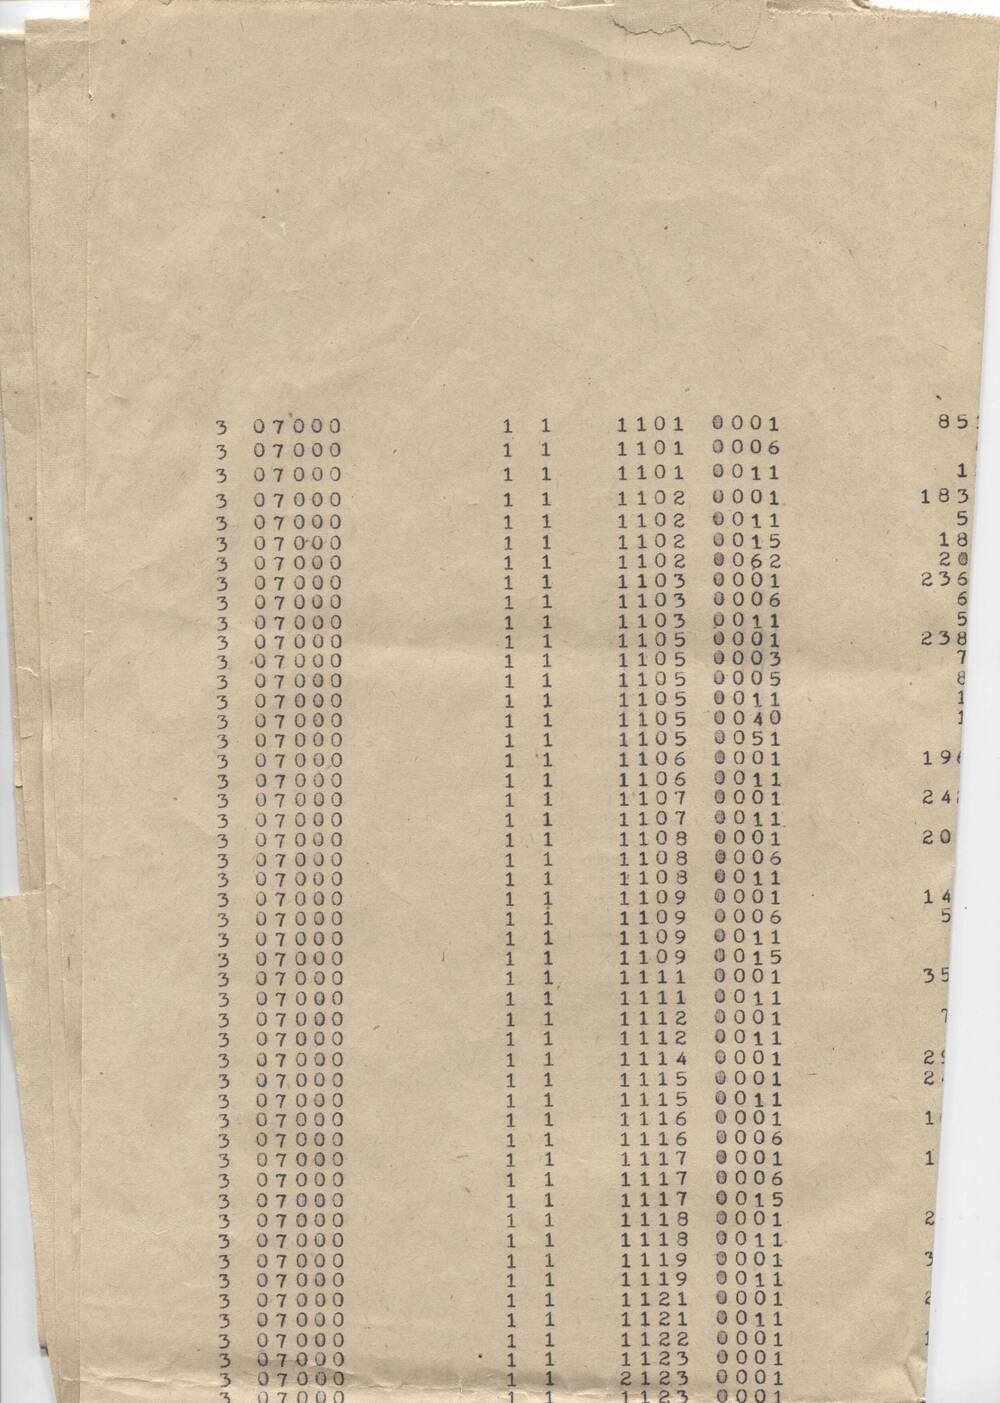 Табулаграмма начисления заработной платы из материалов информационно-вычислительной станции г. Орска, введенной в строй в годы восьмой пятилетки.